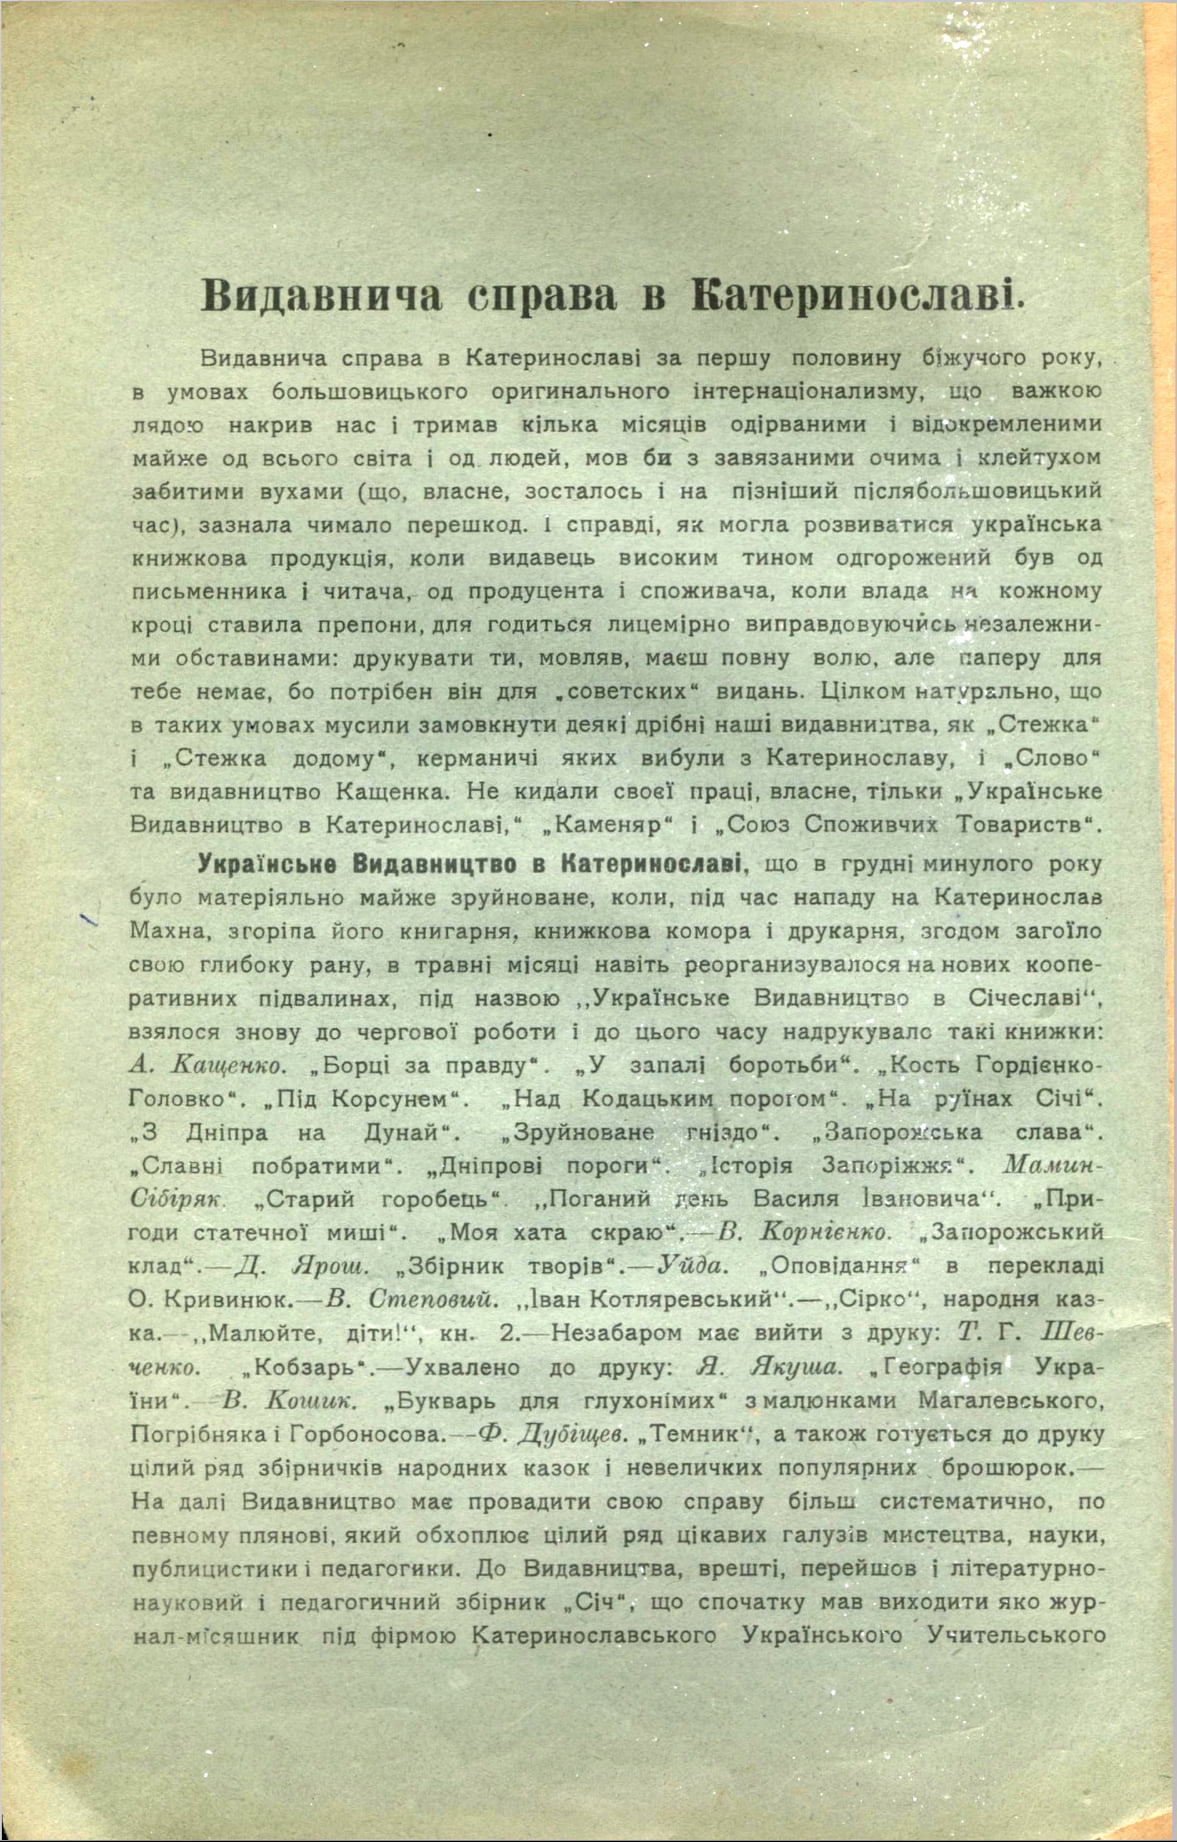 Стаття «Видавнича справа в Катеринославі» П. Єфремова в журналі «Січ», 1919 рік, №1, обкладинка не повна.